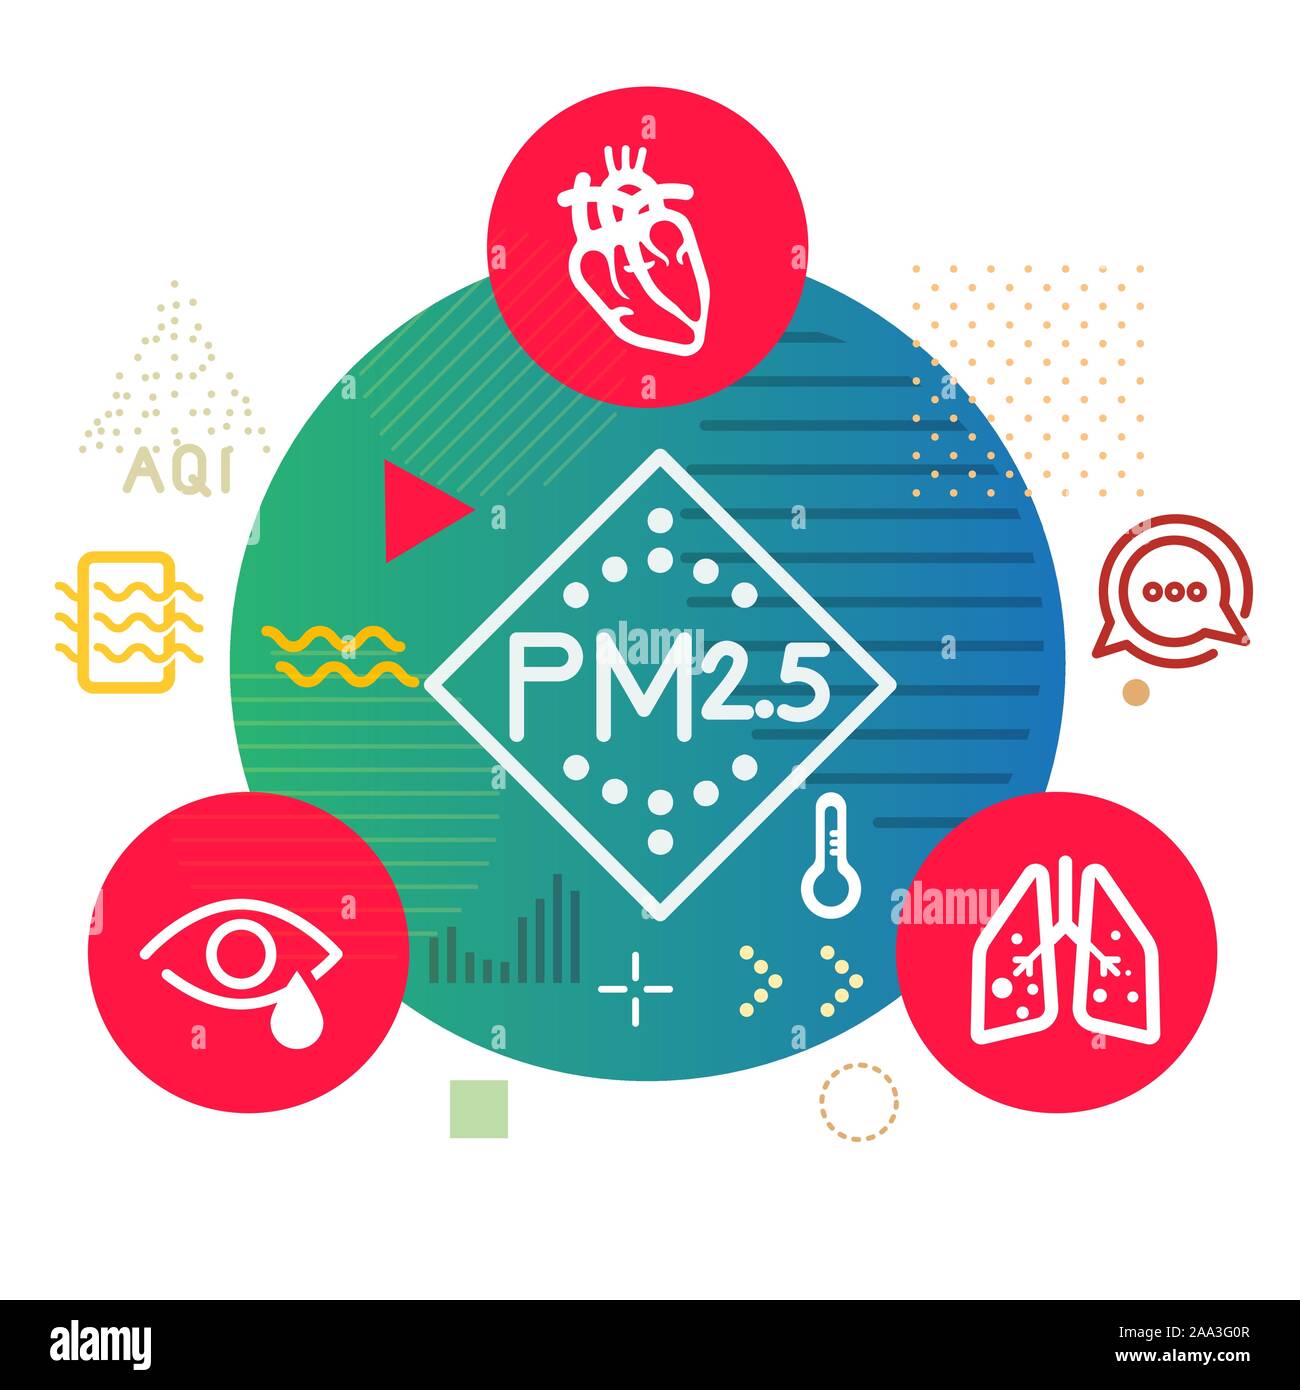 Les particules PM 2,5 de la pollution sur la santé humaine - l'illustration comme fichier EPS 10 Illustration de Vecteur